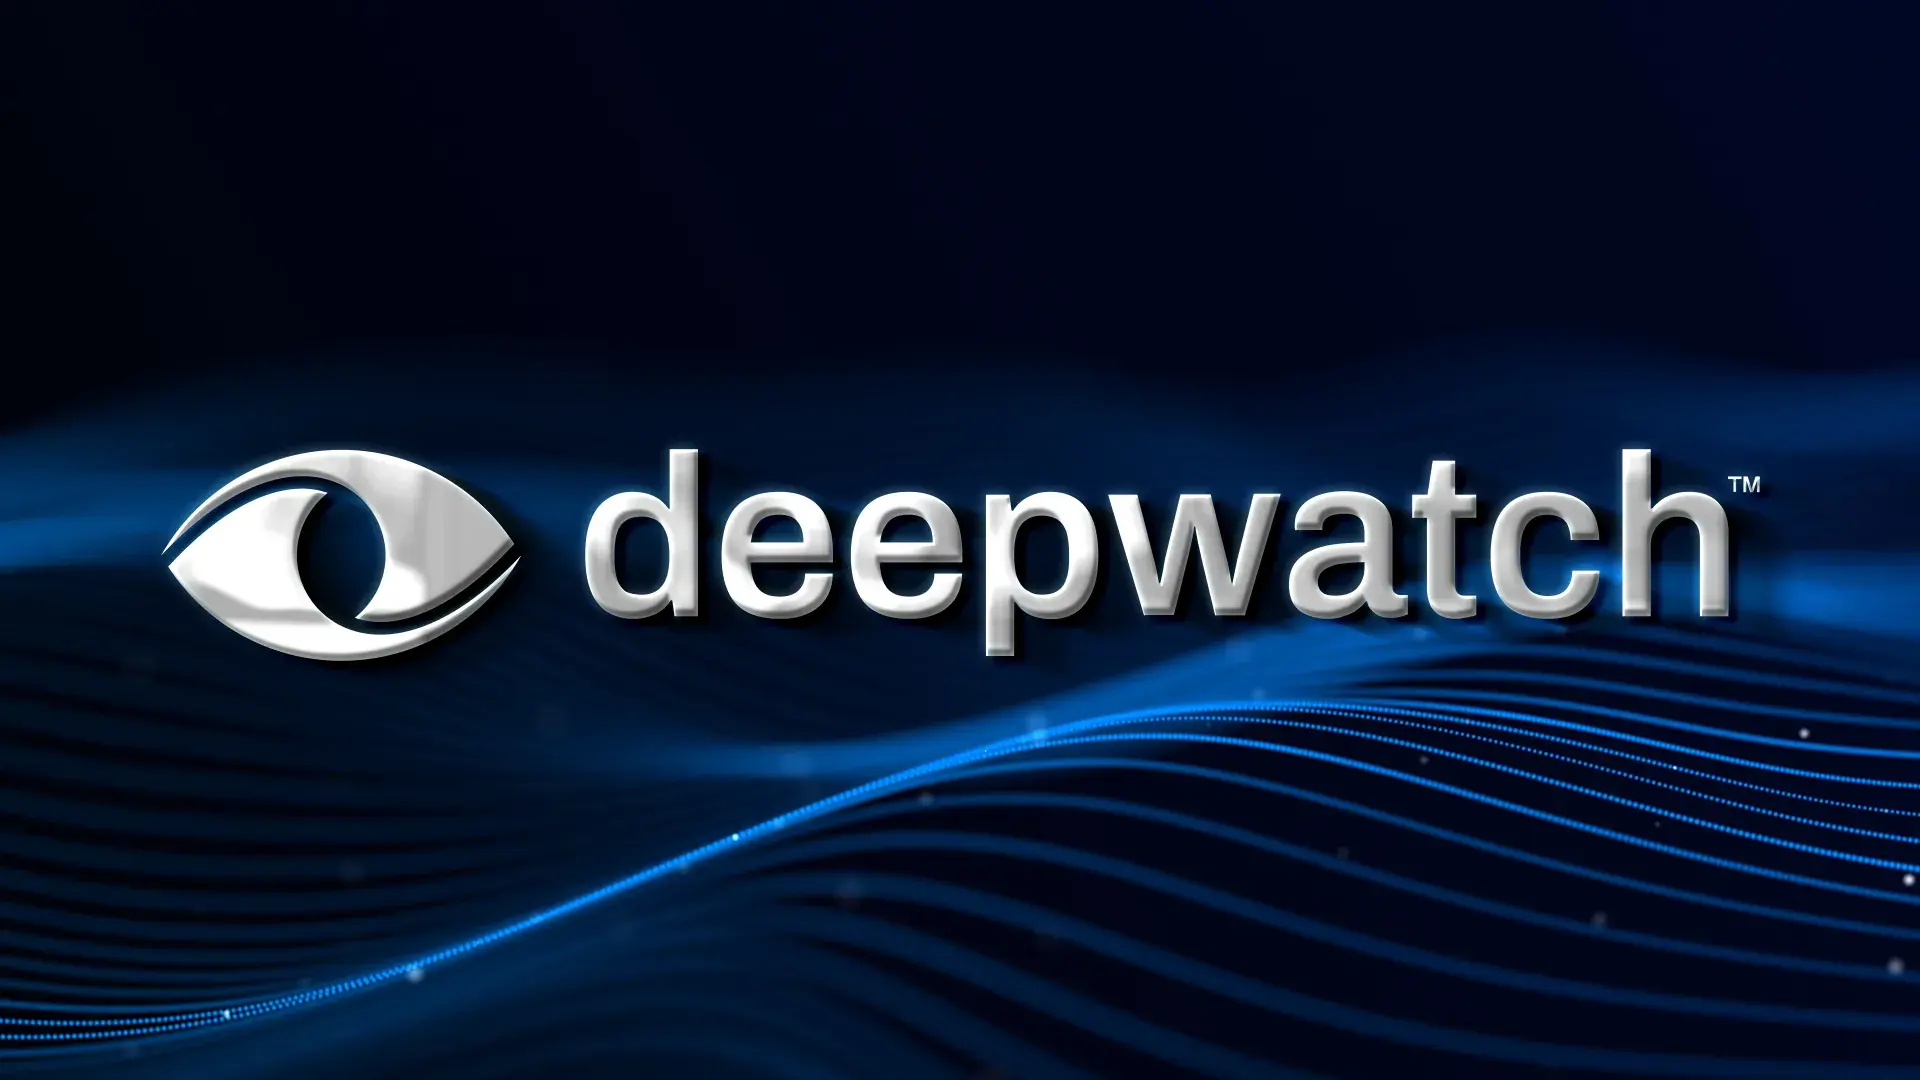 About Deepwatch